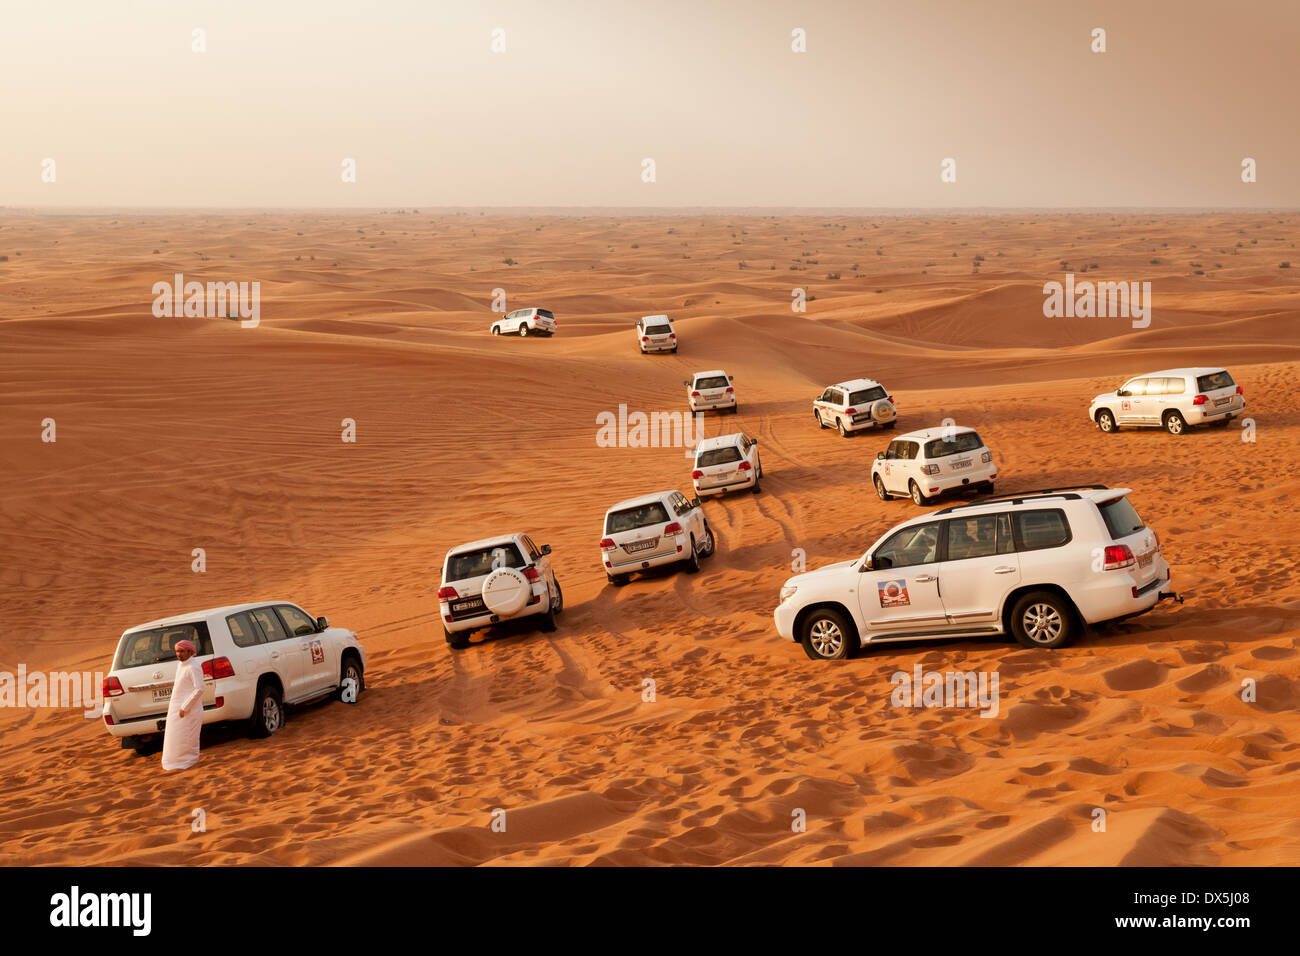 Gruppo di 4 ruote motrici su un safari nel deserto tour, Dubai, deserto Arabico, Emirati Arabi Uniti, Emirati Arabi Uniti, Medio Oriente Foto Stock